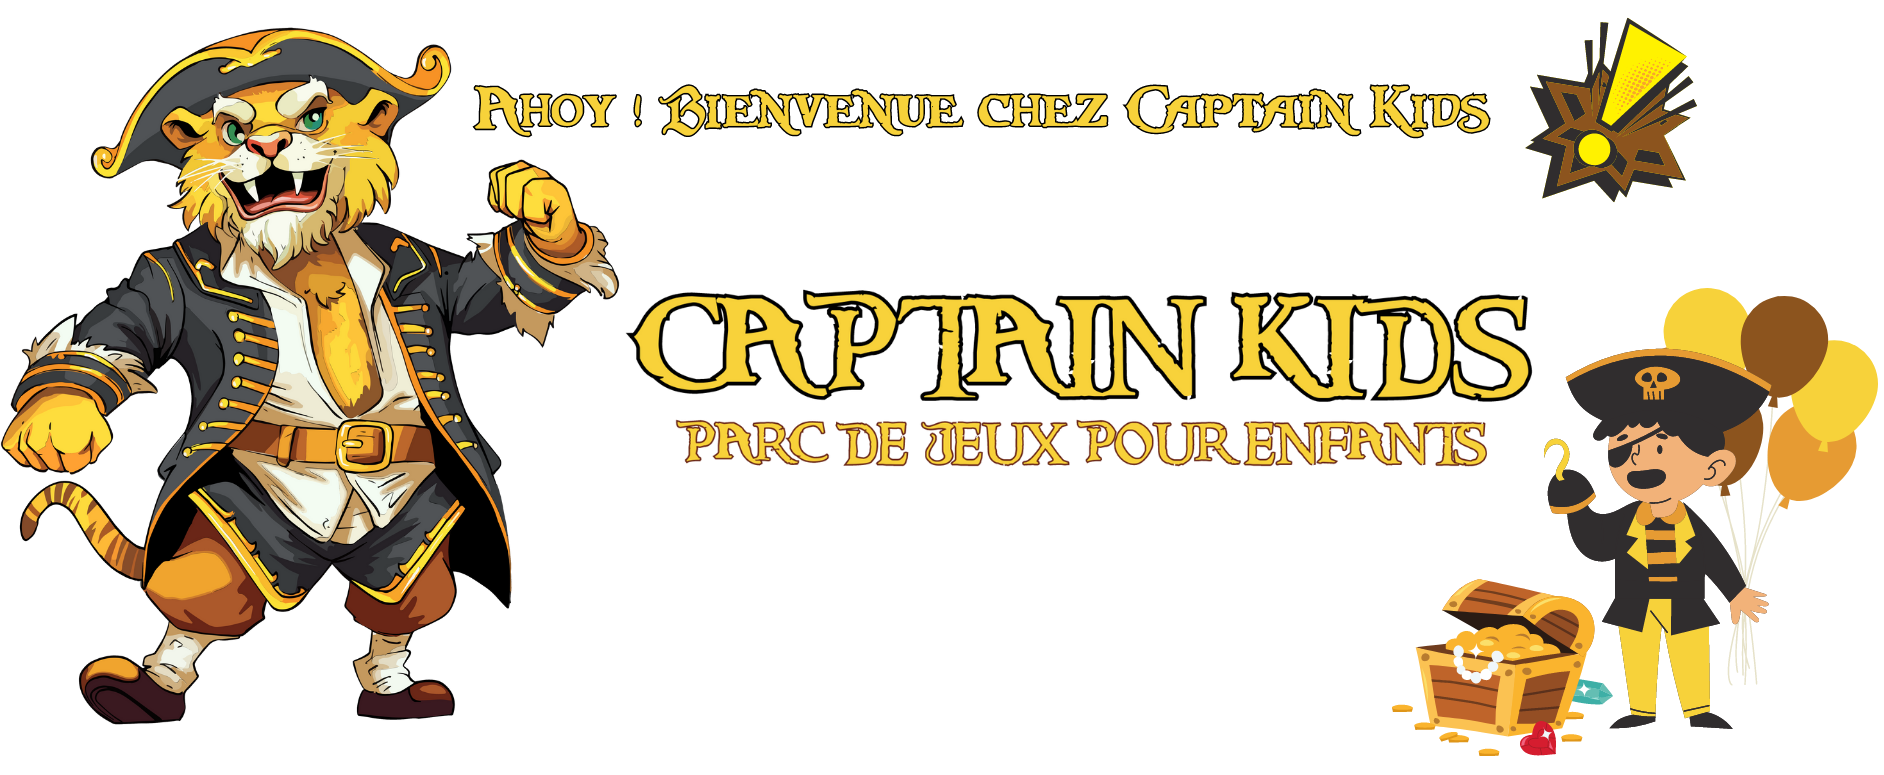 bannière page accueil CaptainKids